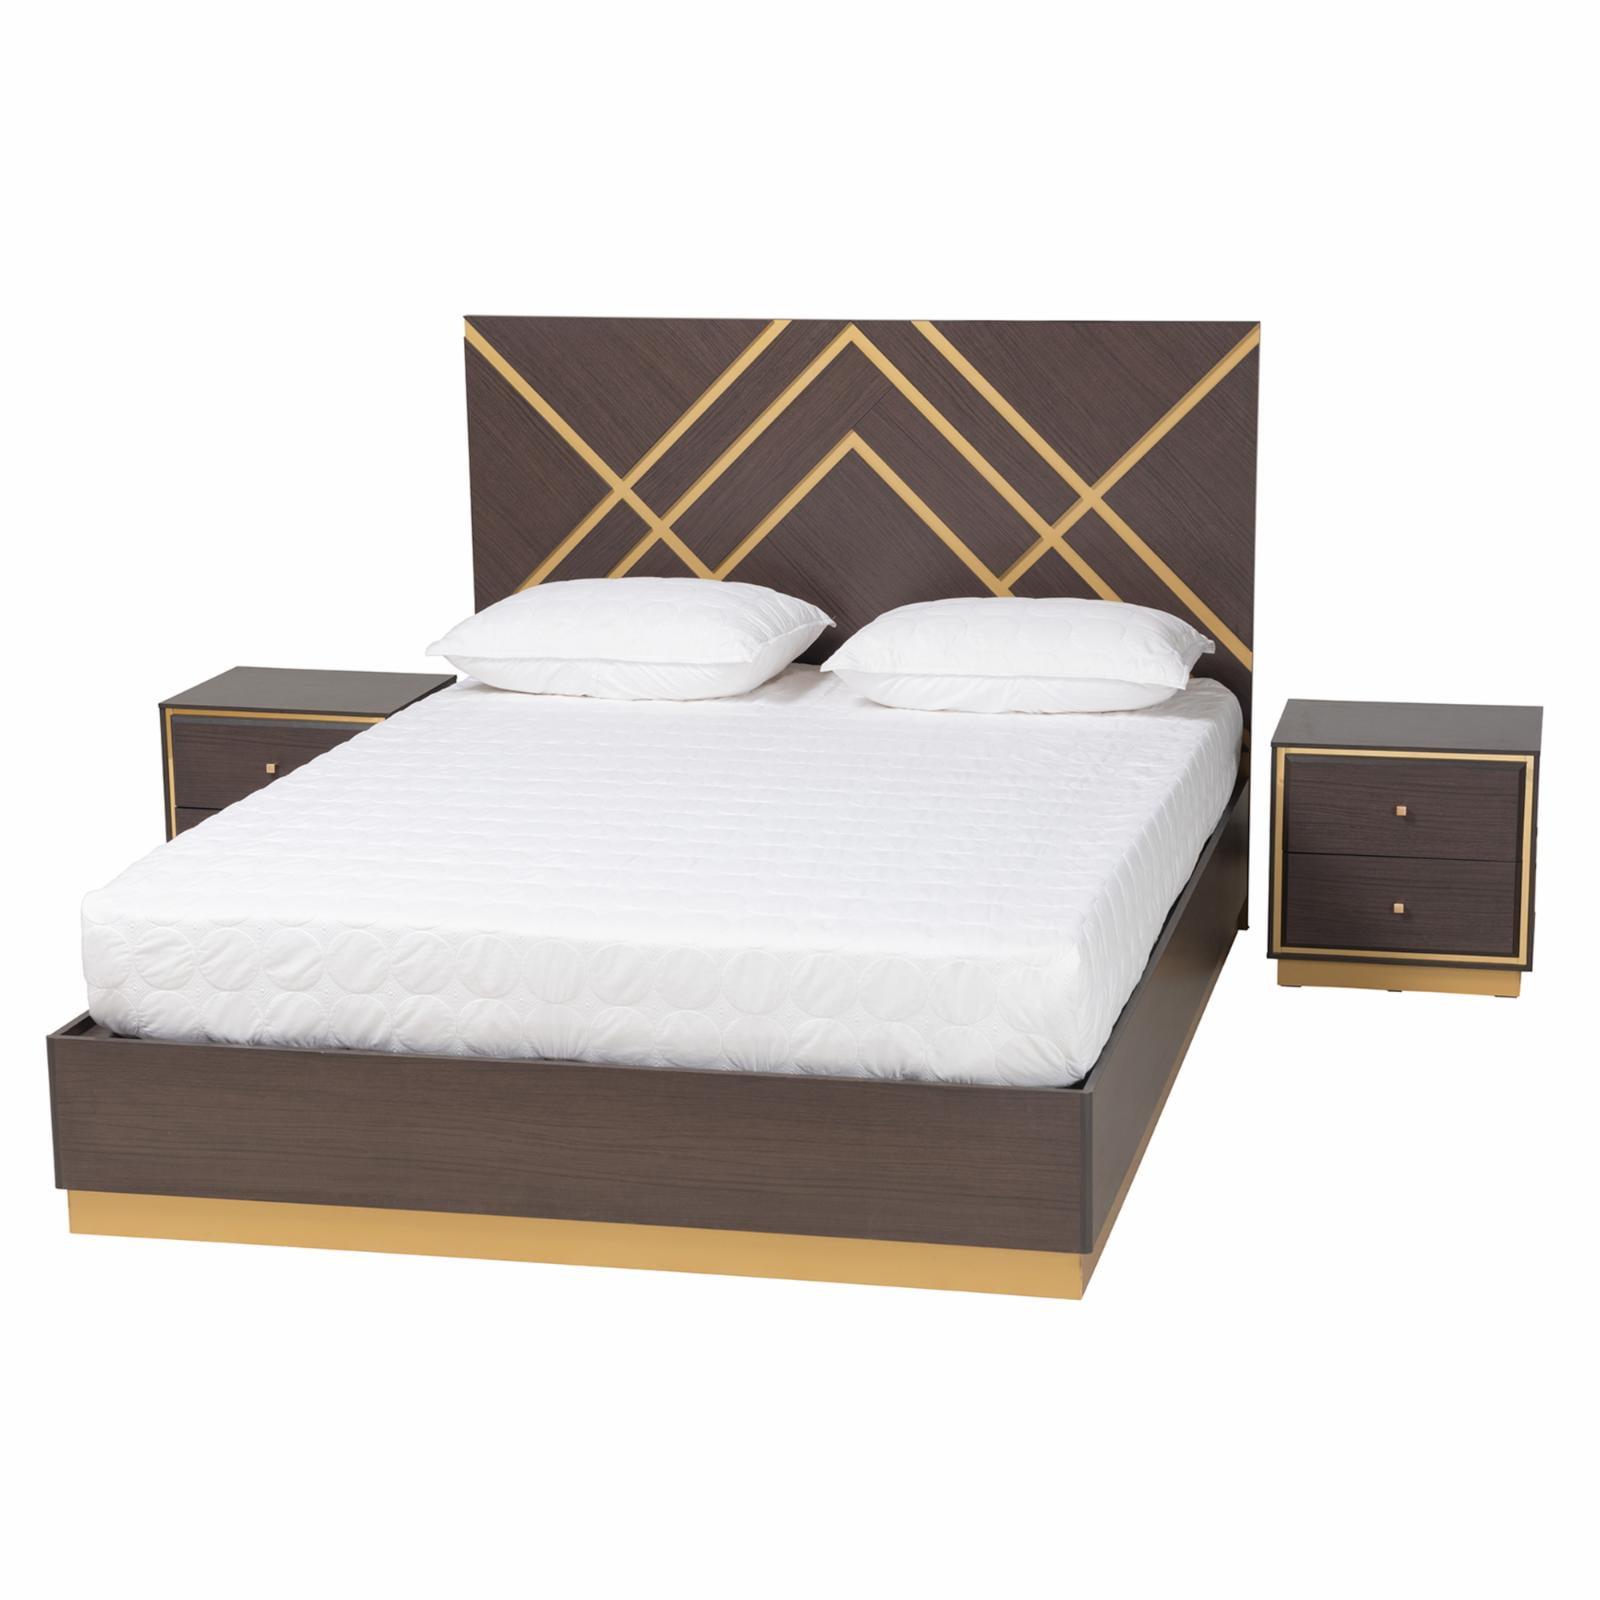 Arcelia Contemporary Dark Brown & Gold Queen Bedroom Set, 3-Piece